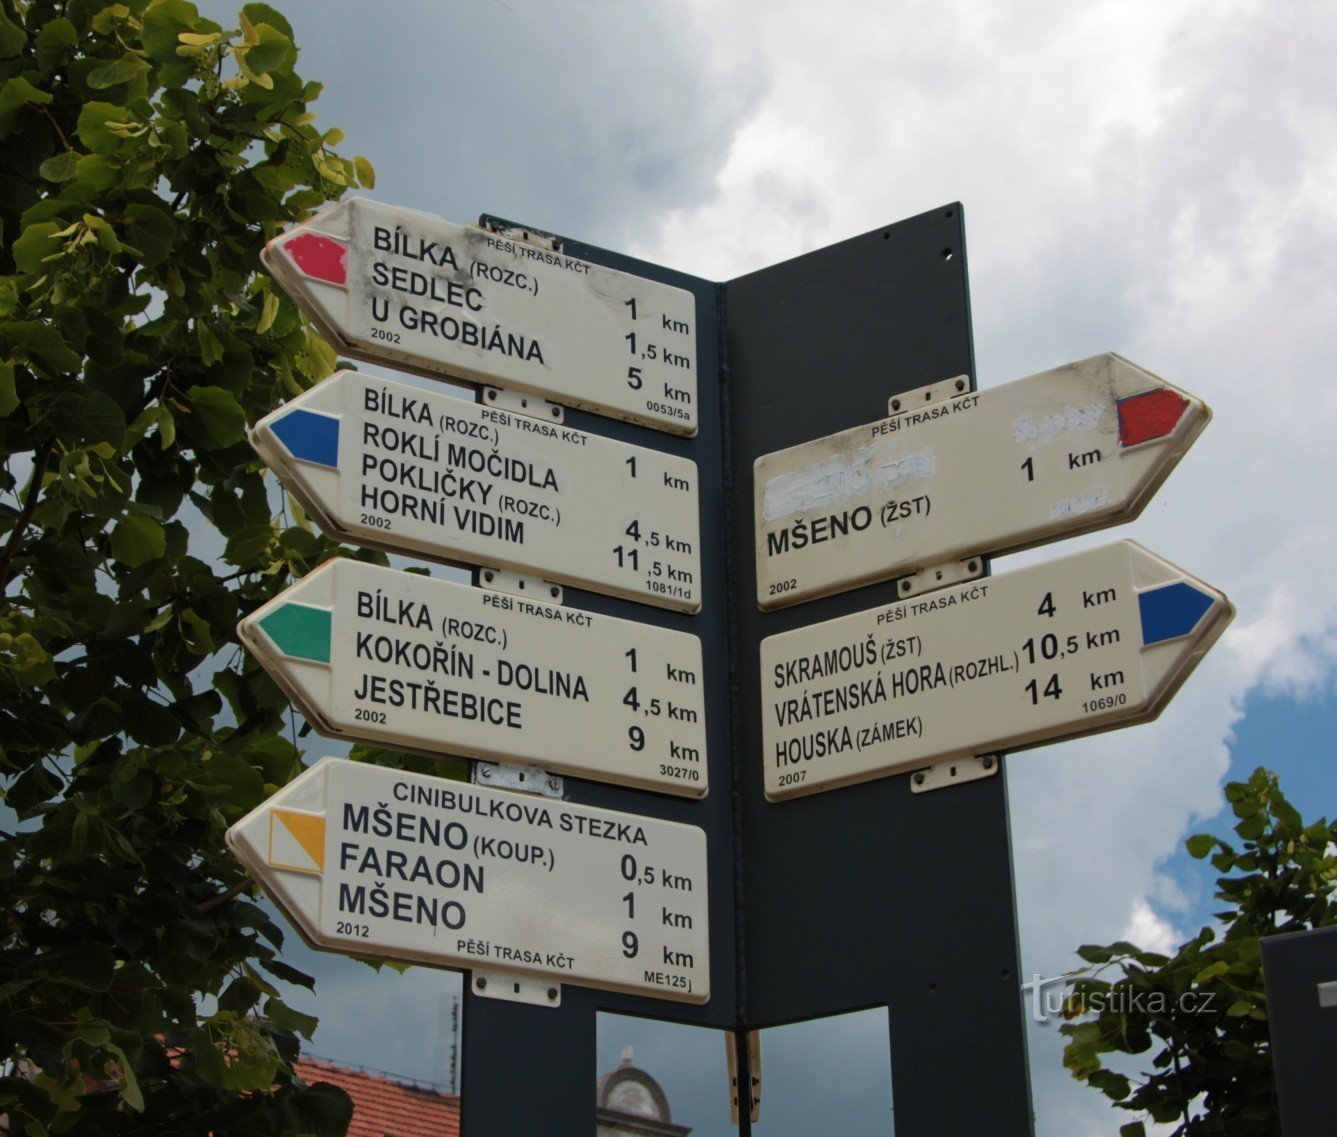 Signpost Mšeno náměstí Miru